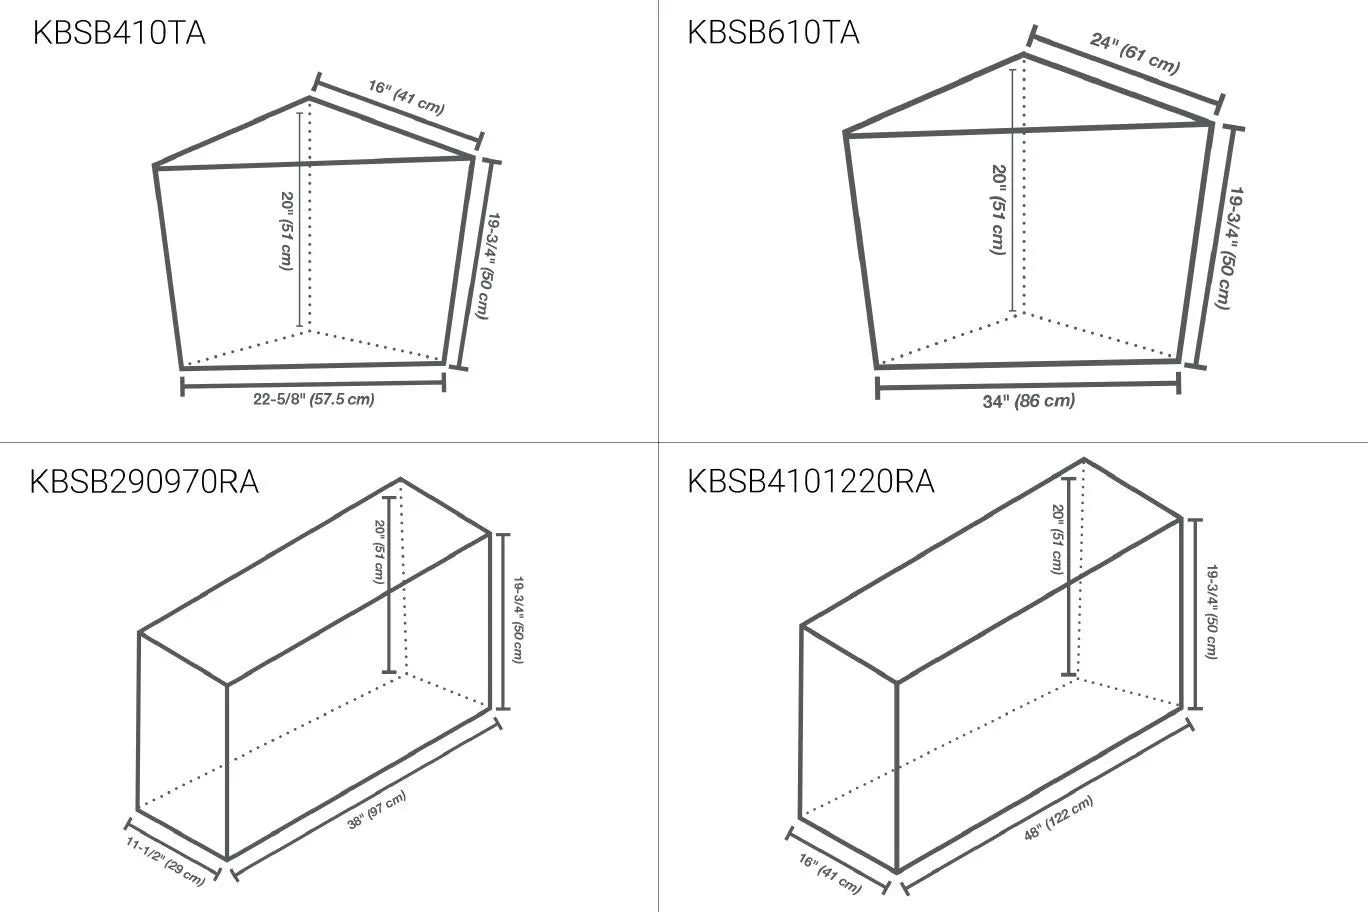 KBSB610TA - 20"x 24" x 24" - Schluter KERDI-BOARD-SB Banc de douche préfabriqué étanche triangulaire